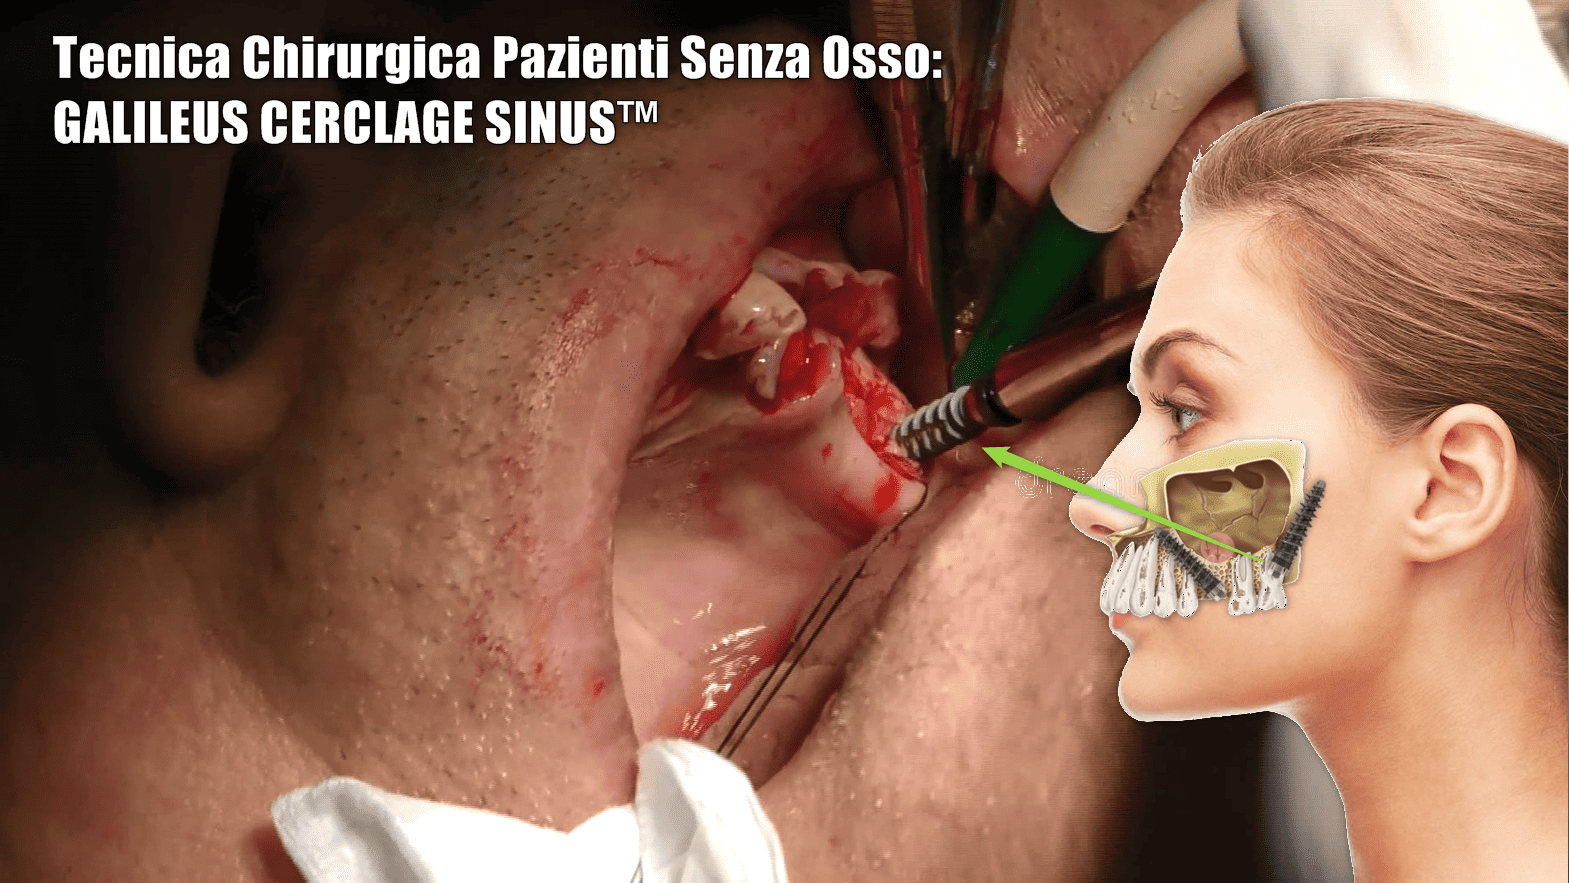 immagine che mostra tecnica chirurgica de galileus cerclage sinus